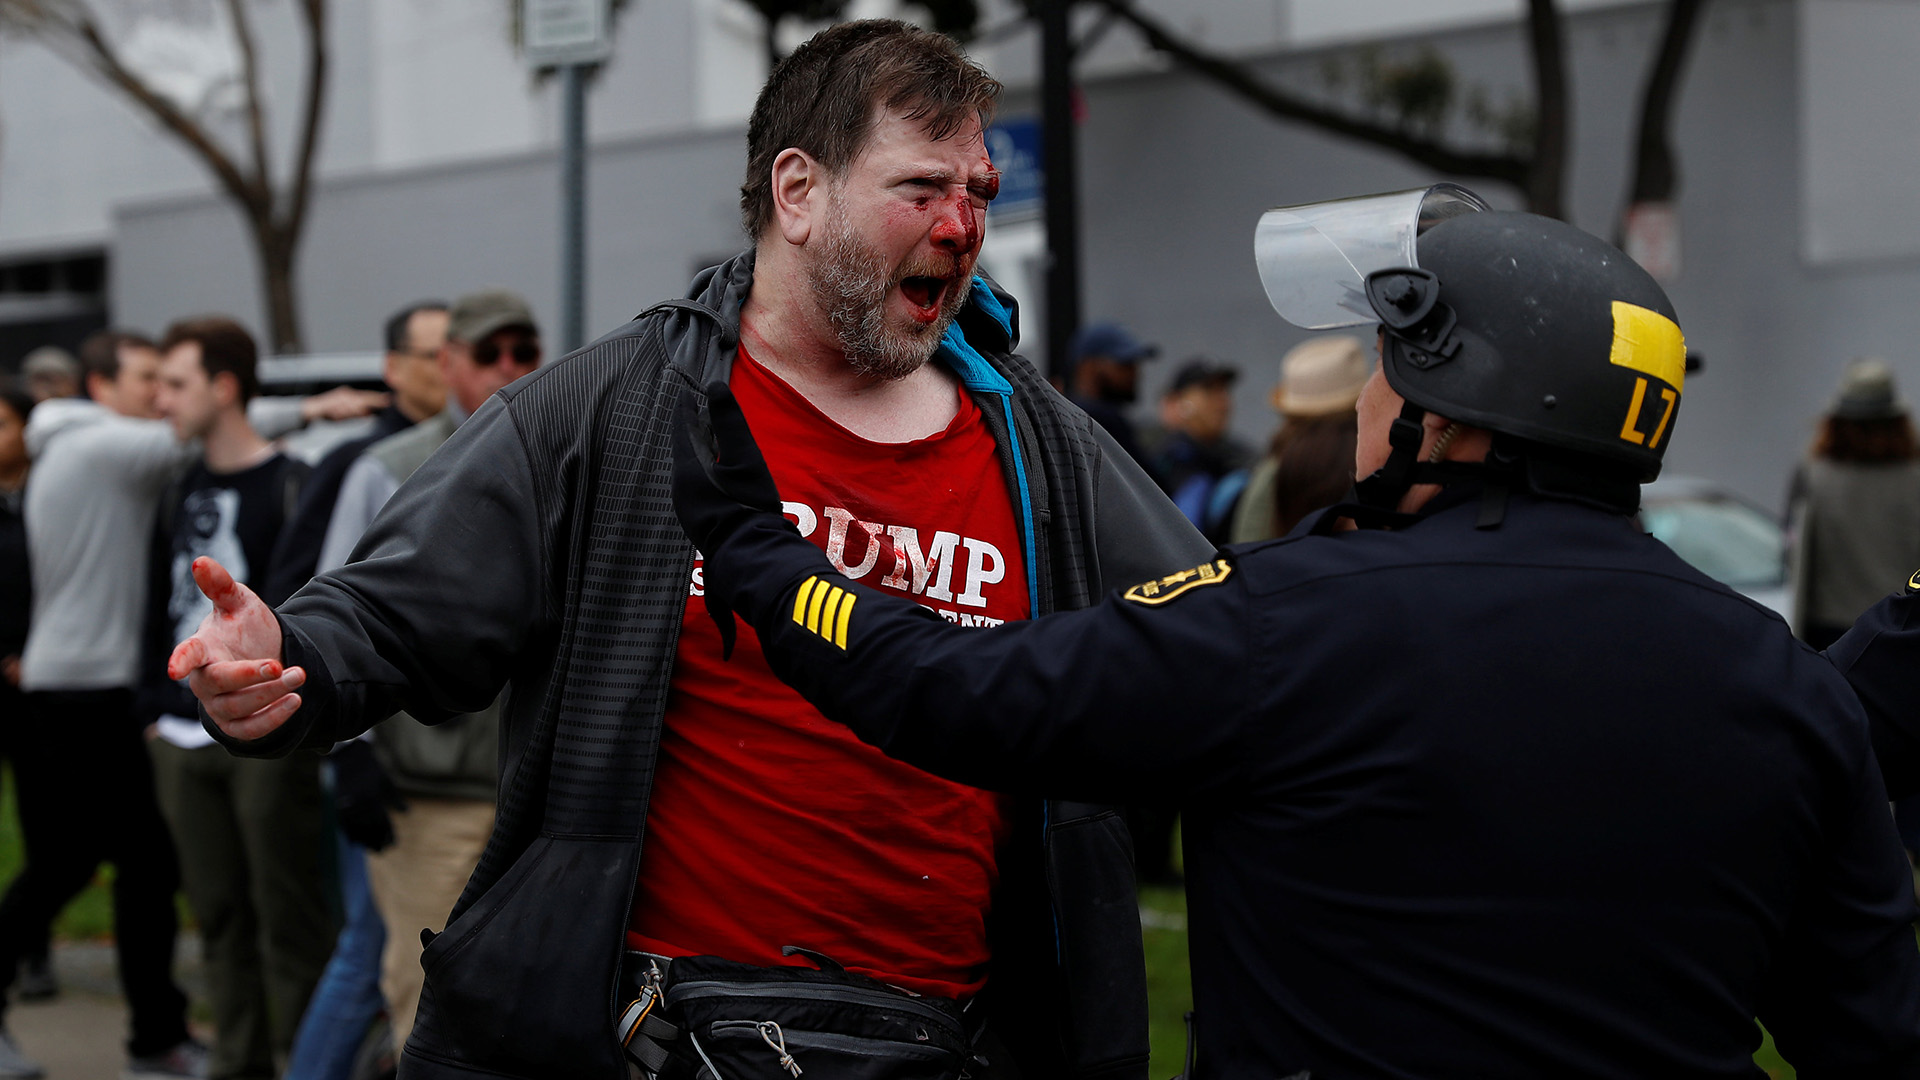 Diez detenidos tras choques entre simpatizantes y detractores de Trump en Berkeley 2